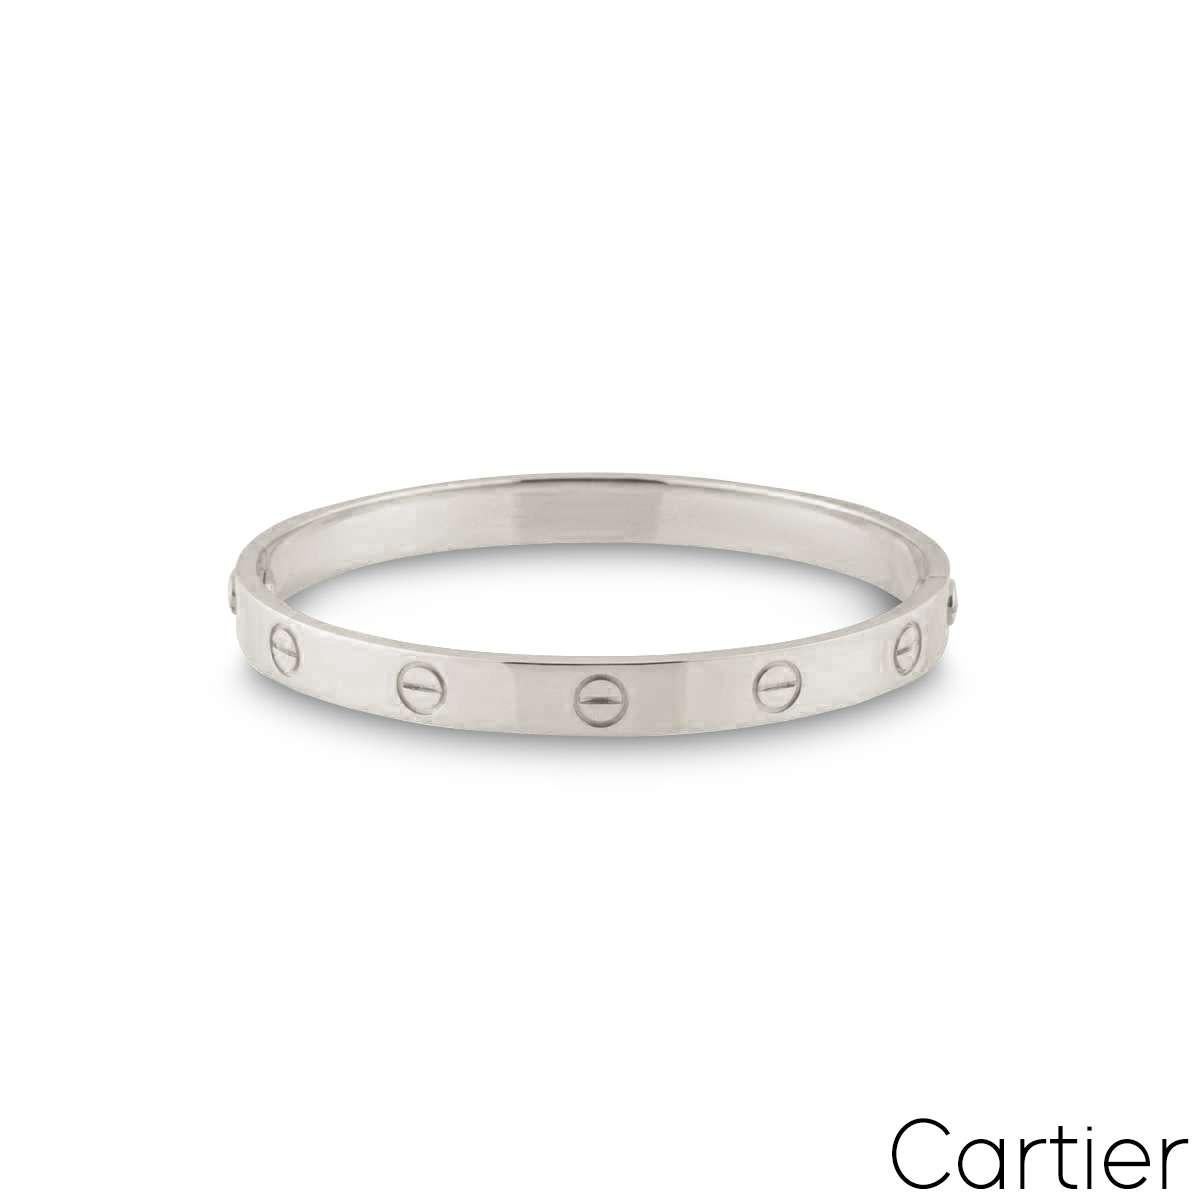 Un bracelet Cartier en or blanc 18 carats de la collection Love. Le bracelet comporte le motif à vis emblématique de Cartier sur le bord extérieur. De taille 20, doté de l'ancien système de fermeture à vis, ce bracelet a un poids brut de 38,17